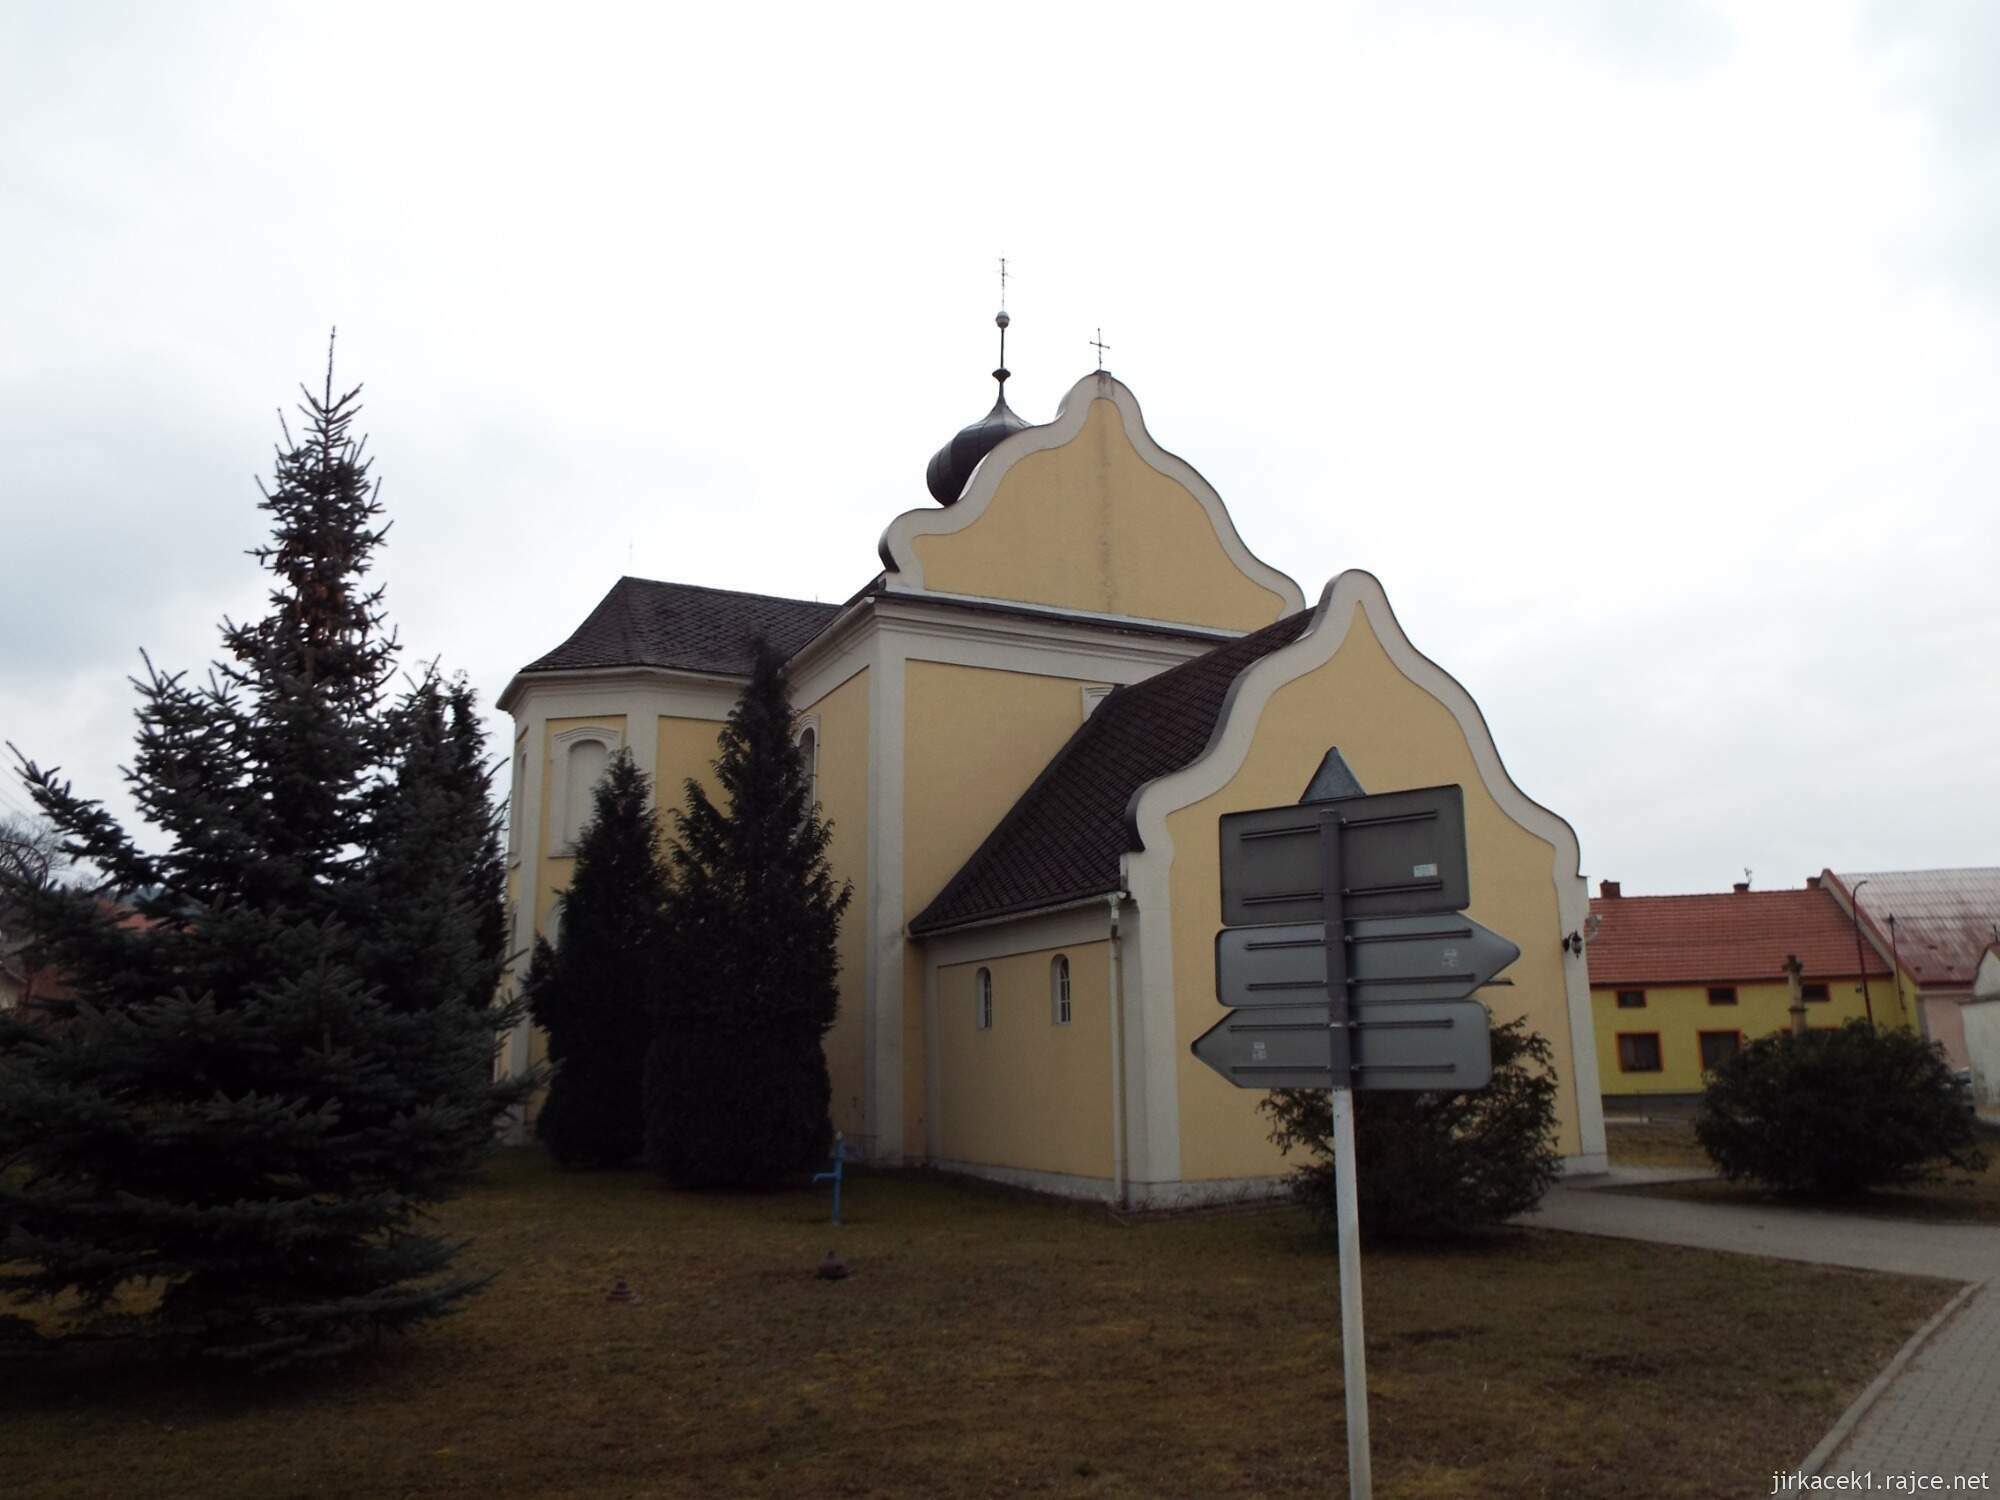 02 - Jaroměřice - Kostel Všech svatých 08 - čelní pohled